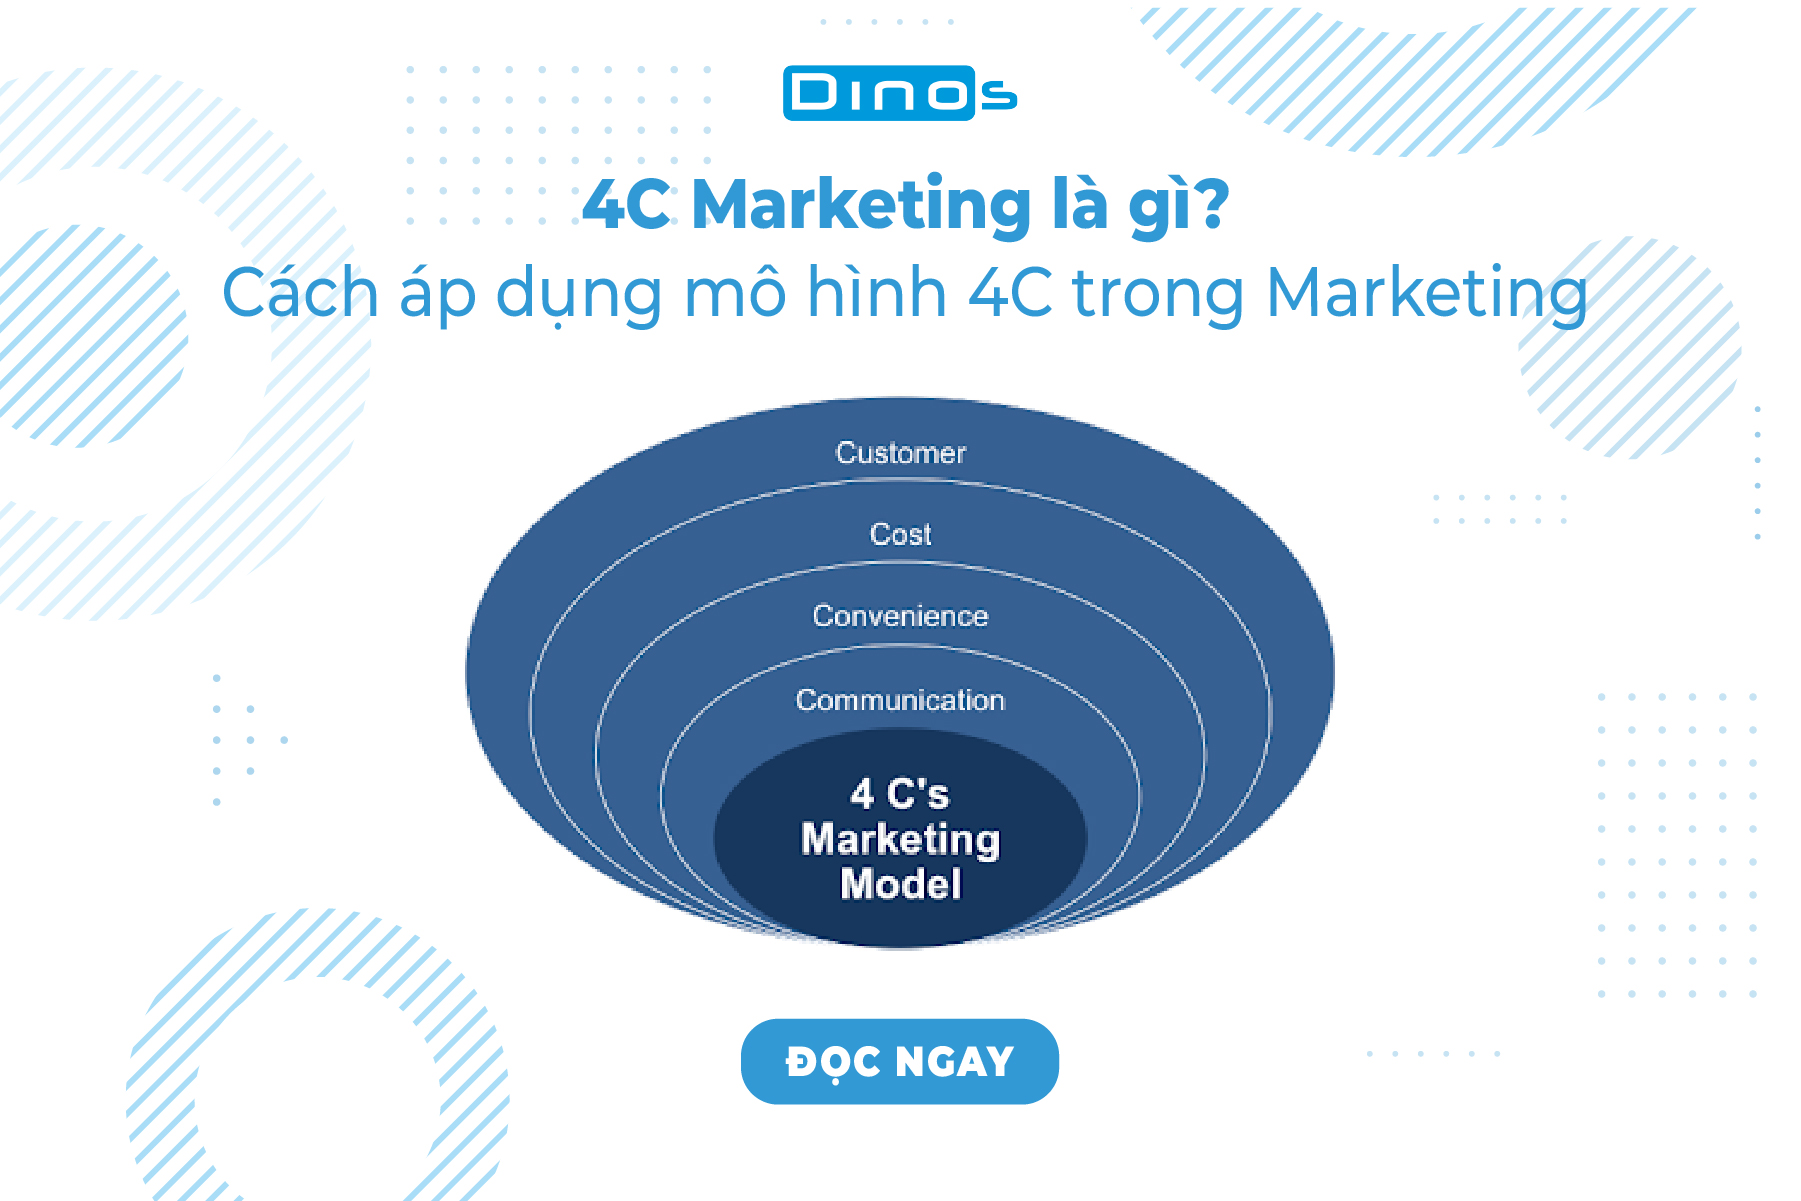 4C Marketing là gì? Cách áp dụng mô hình 4C trong Marketing